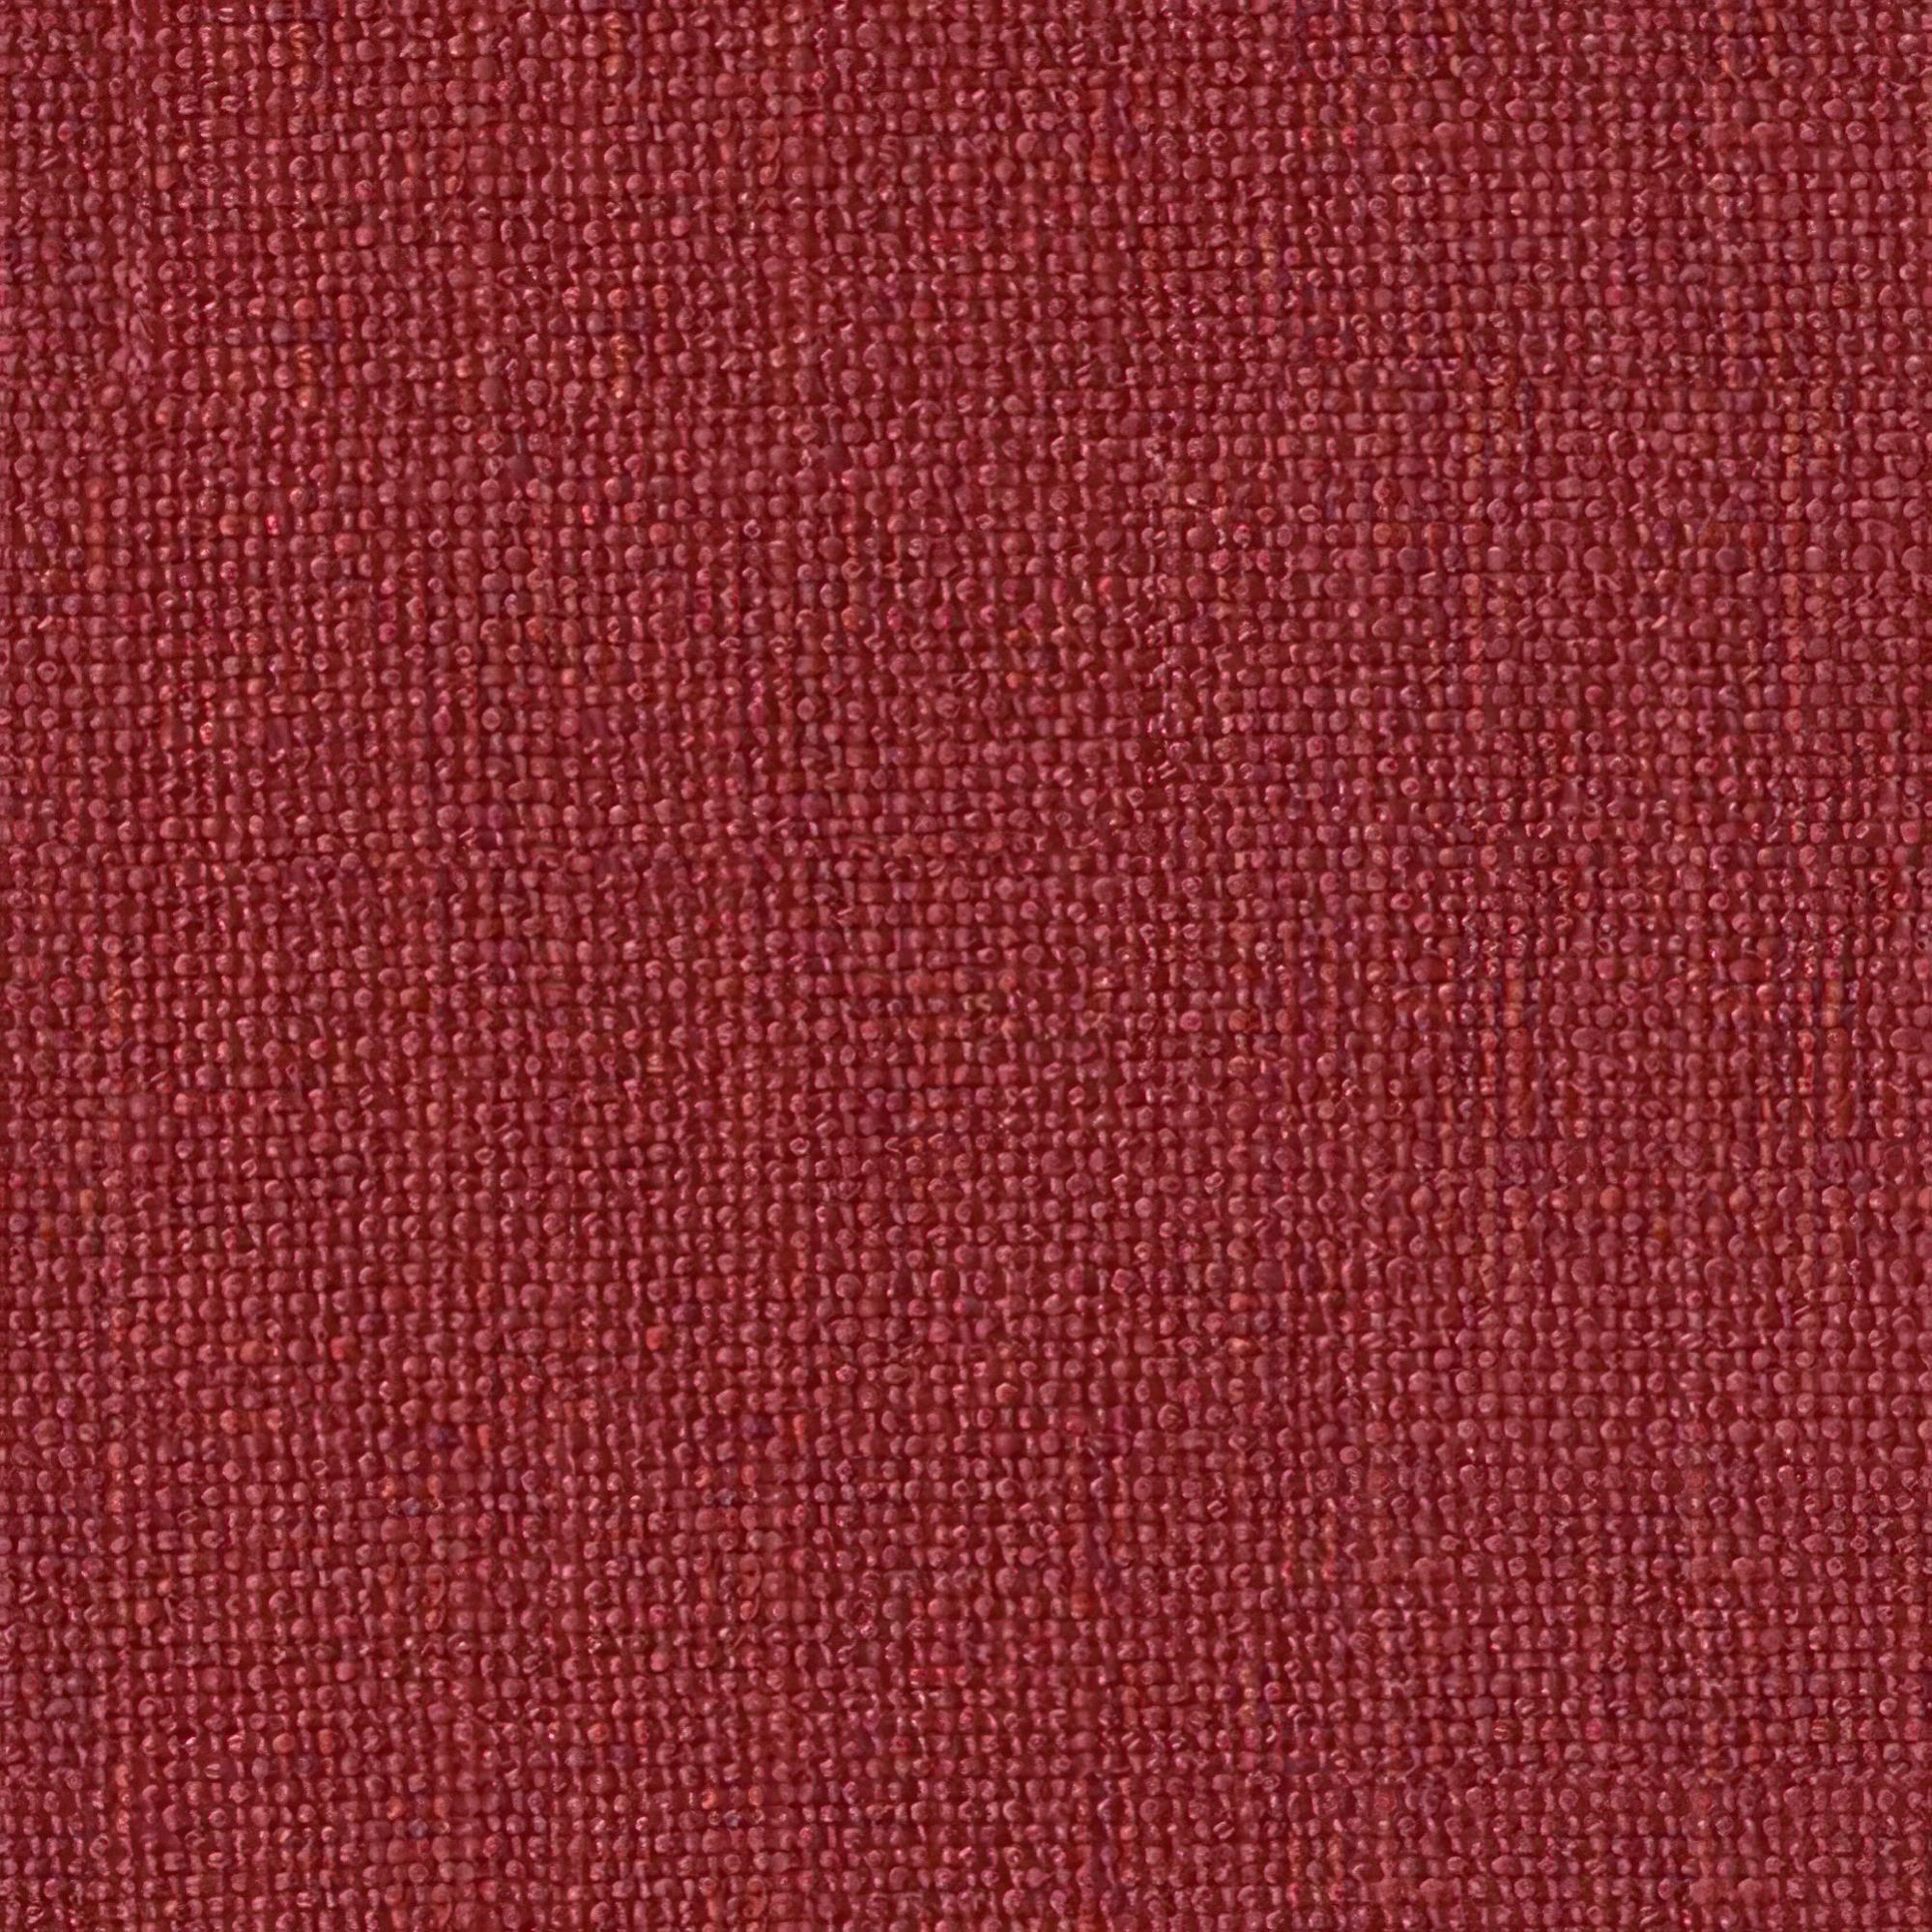 Tela al corte tapicería lino country rojo ancho 140 cm